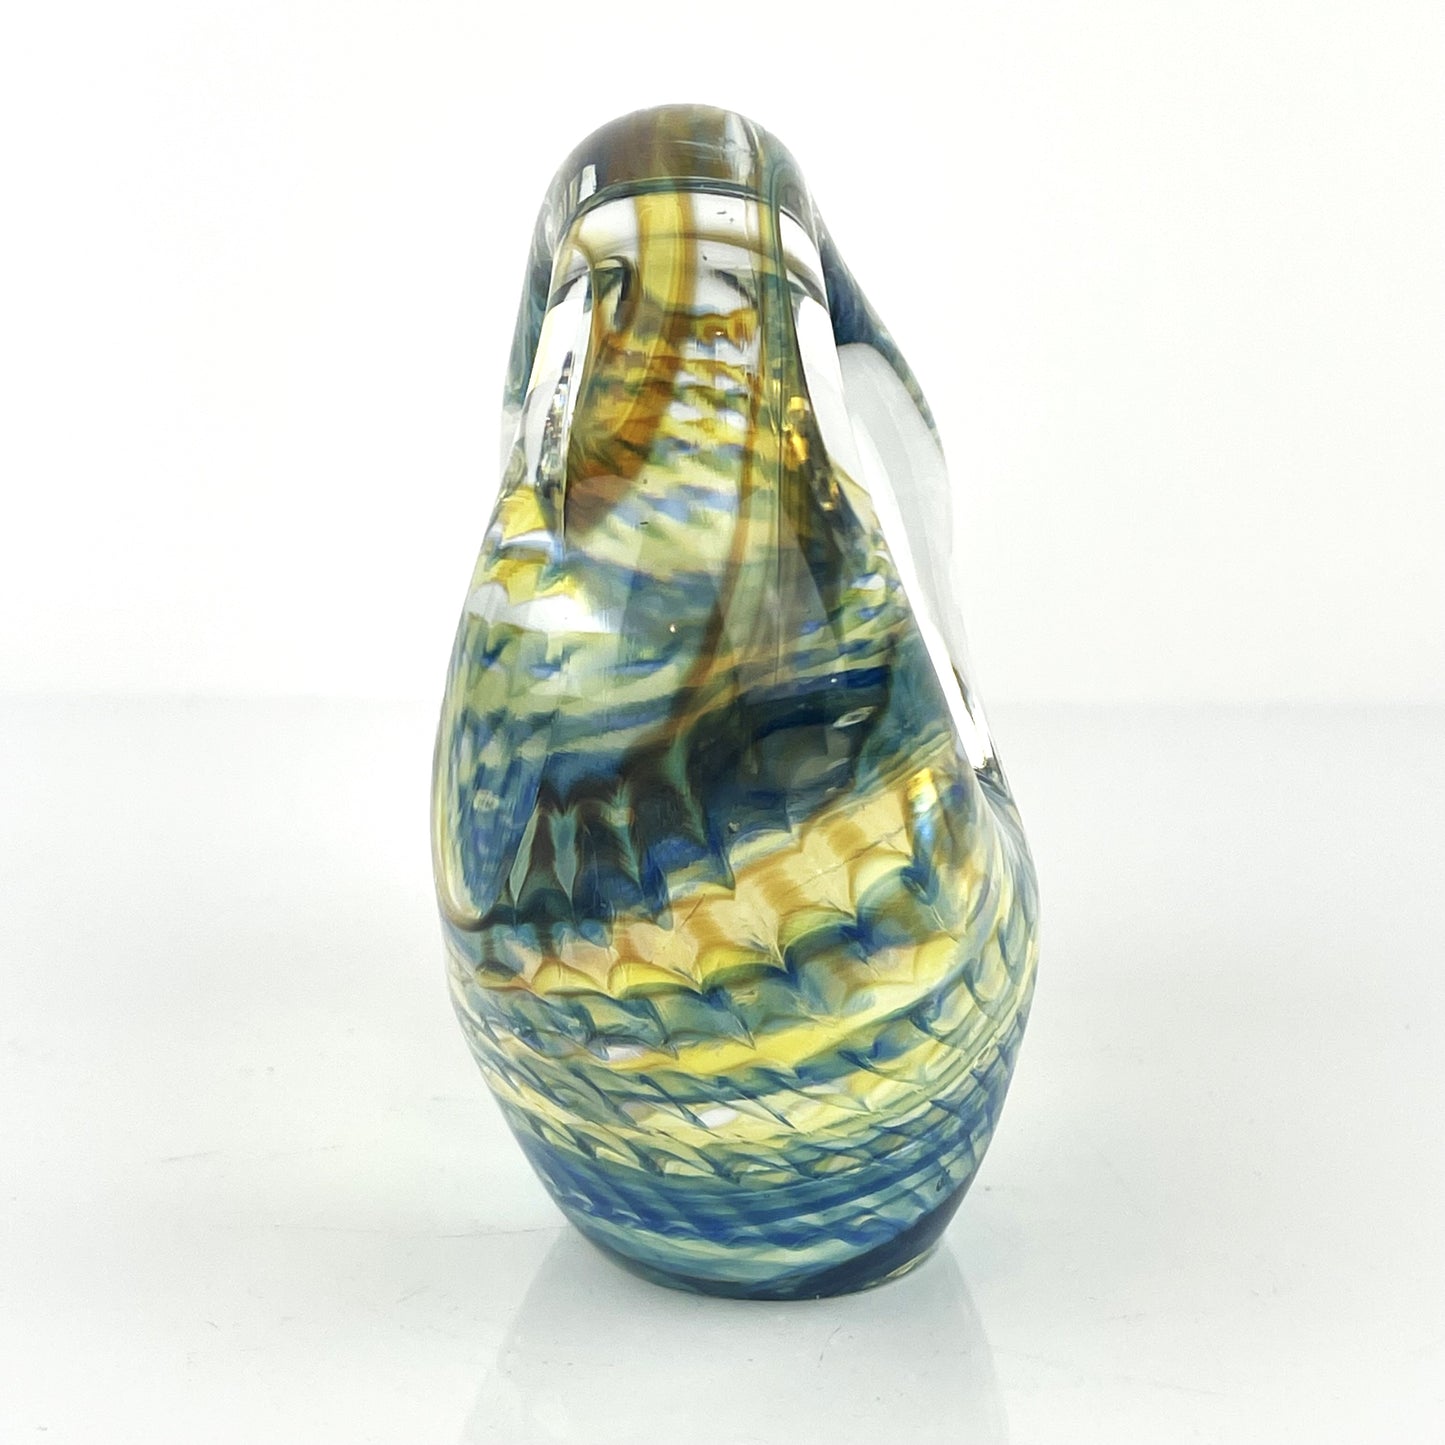 Chris Belleau Uniquely Shaped Art Glass Sculpture Paperweight